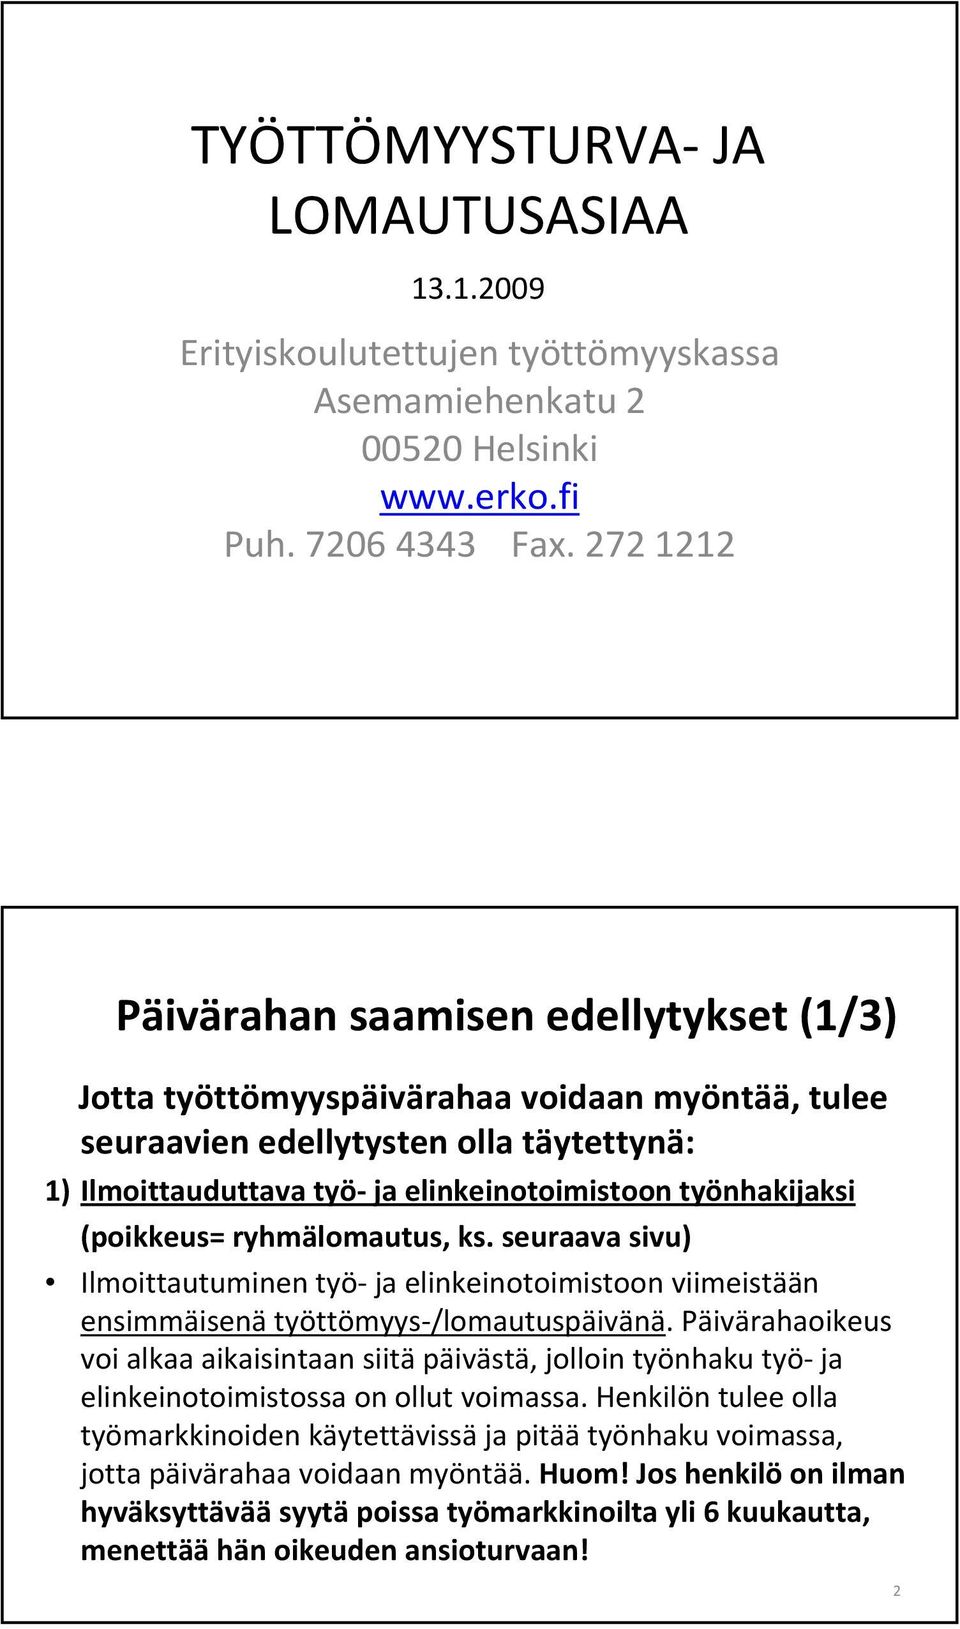 TYÖTTÖMYYSTURVA JA LOMAUTUSASIAA - PDF Ilmainen lataus